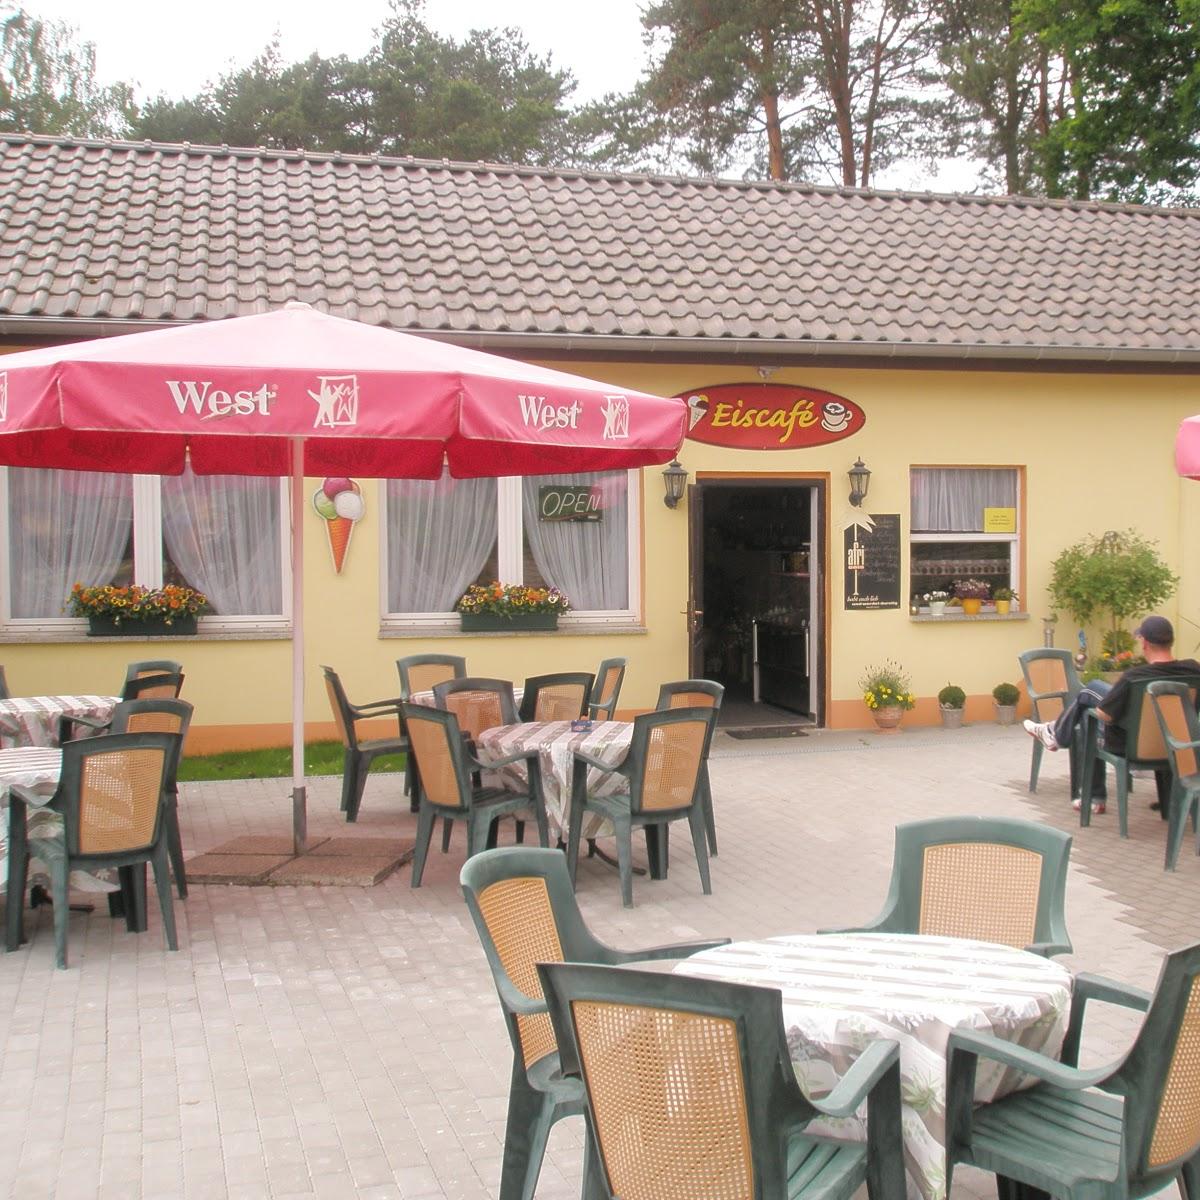 Restaurant "Eiscafé am See" in Marienwerder